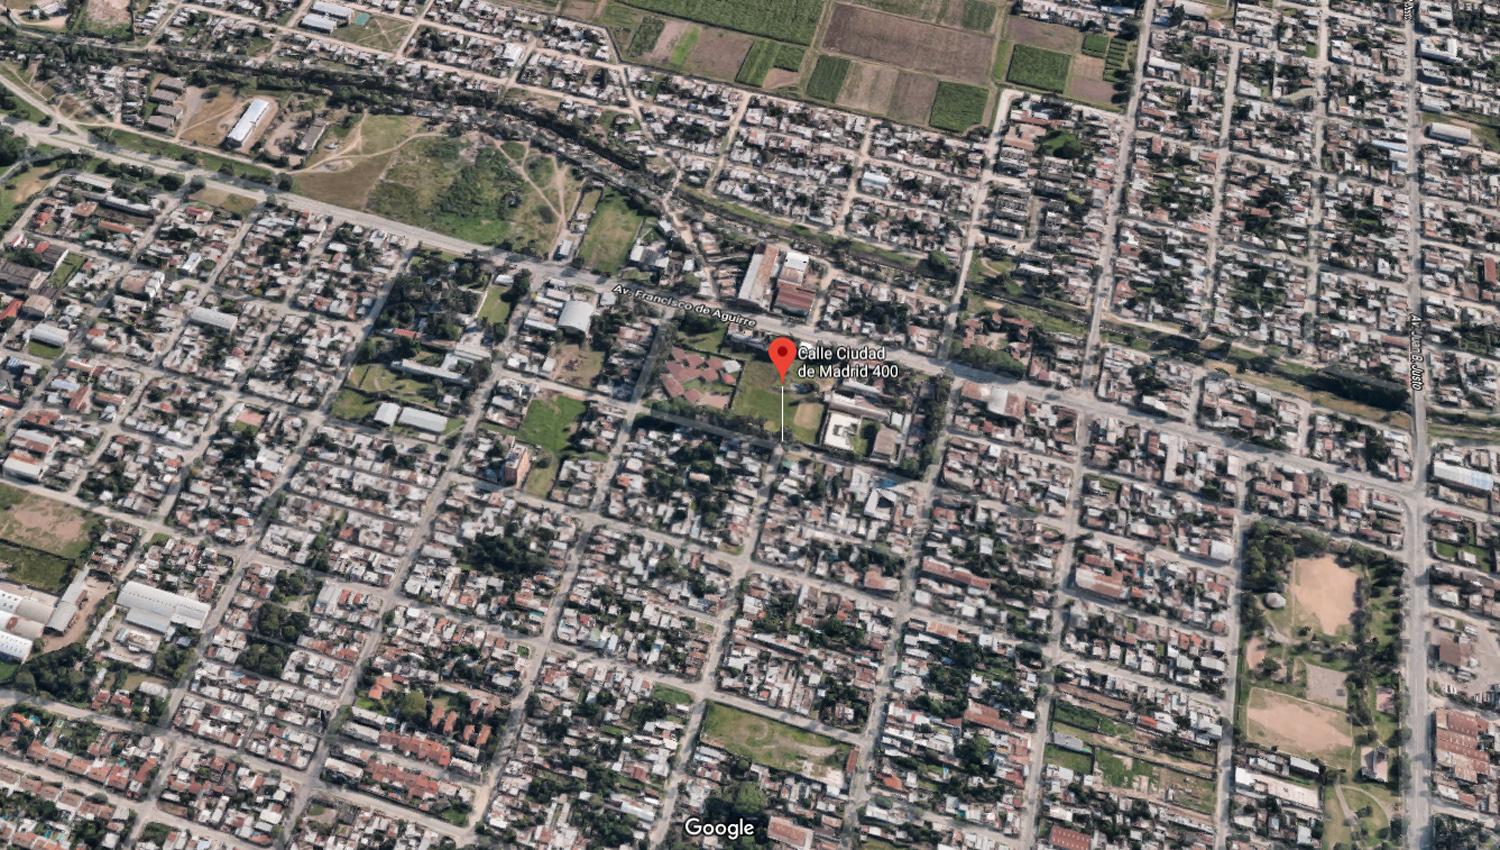 El punto rojo marca el lugar en dónde comenzó la persecución. (Captura de Google Maps)